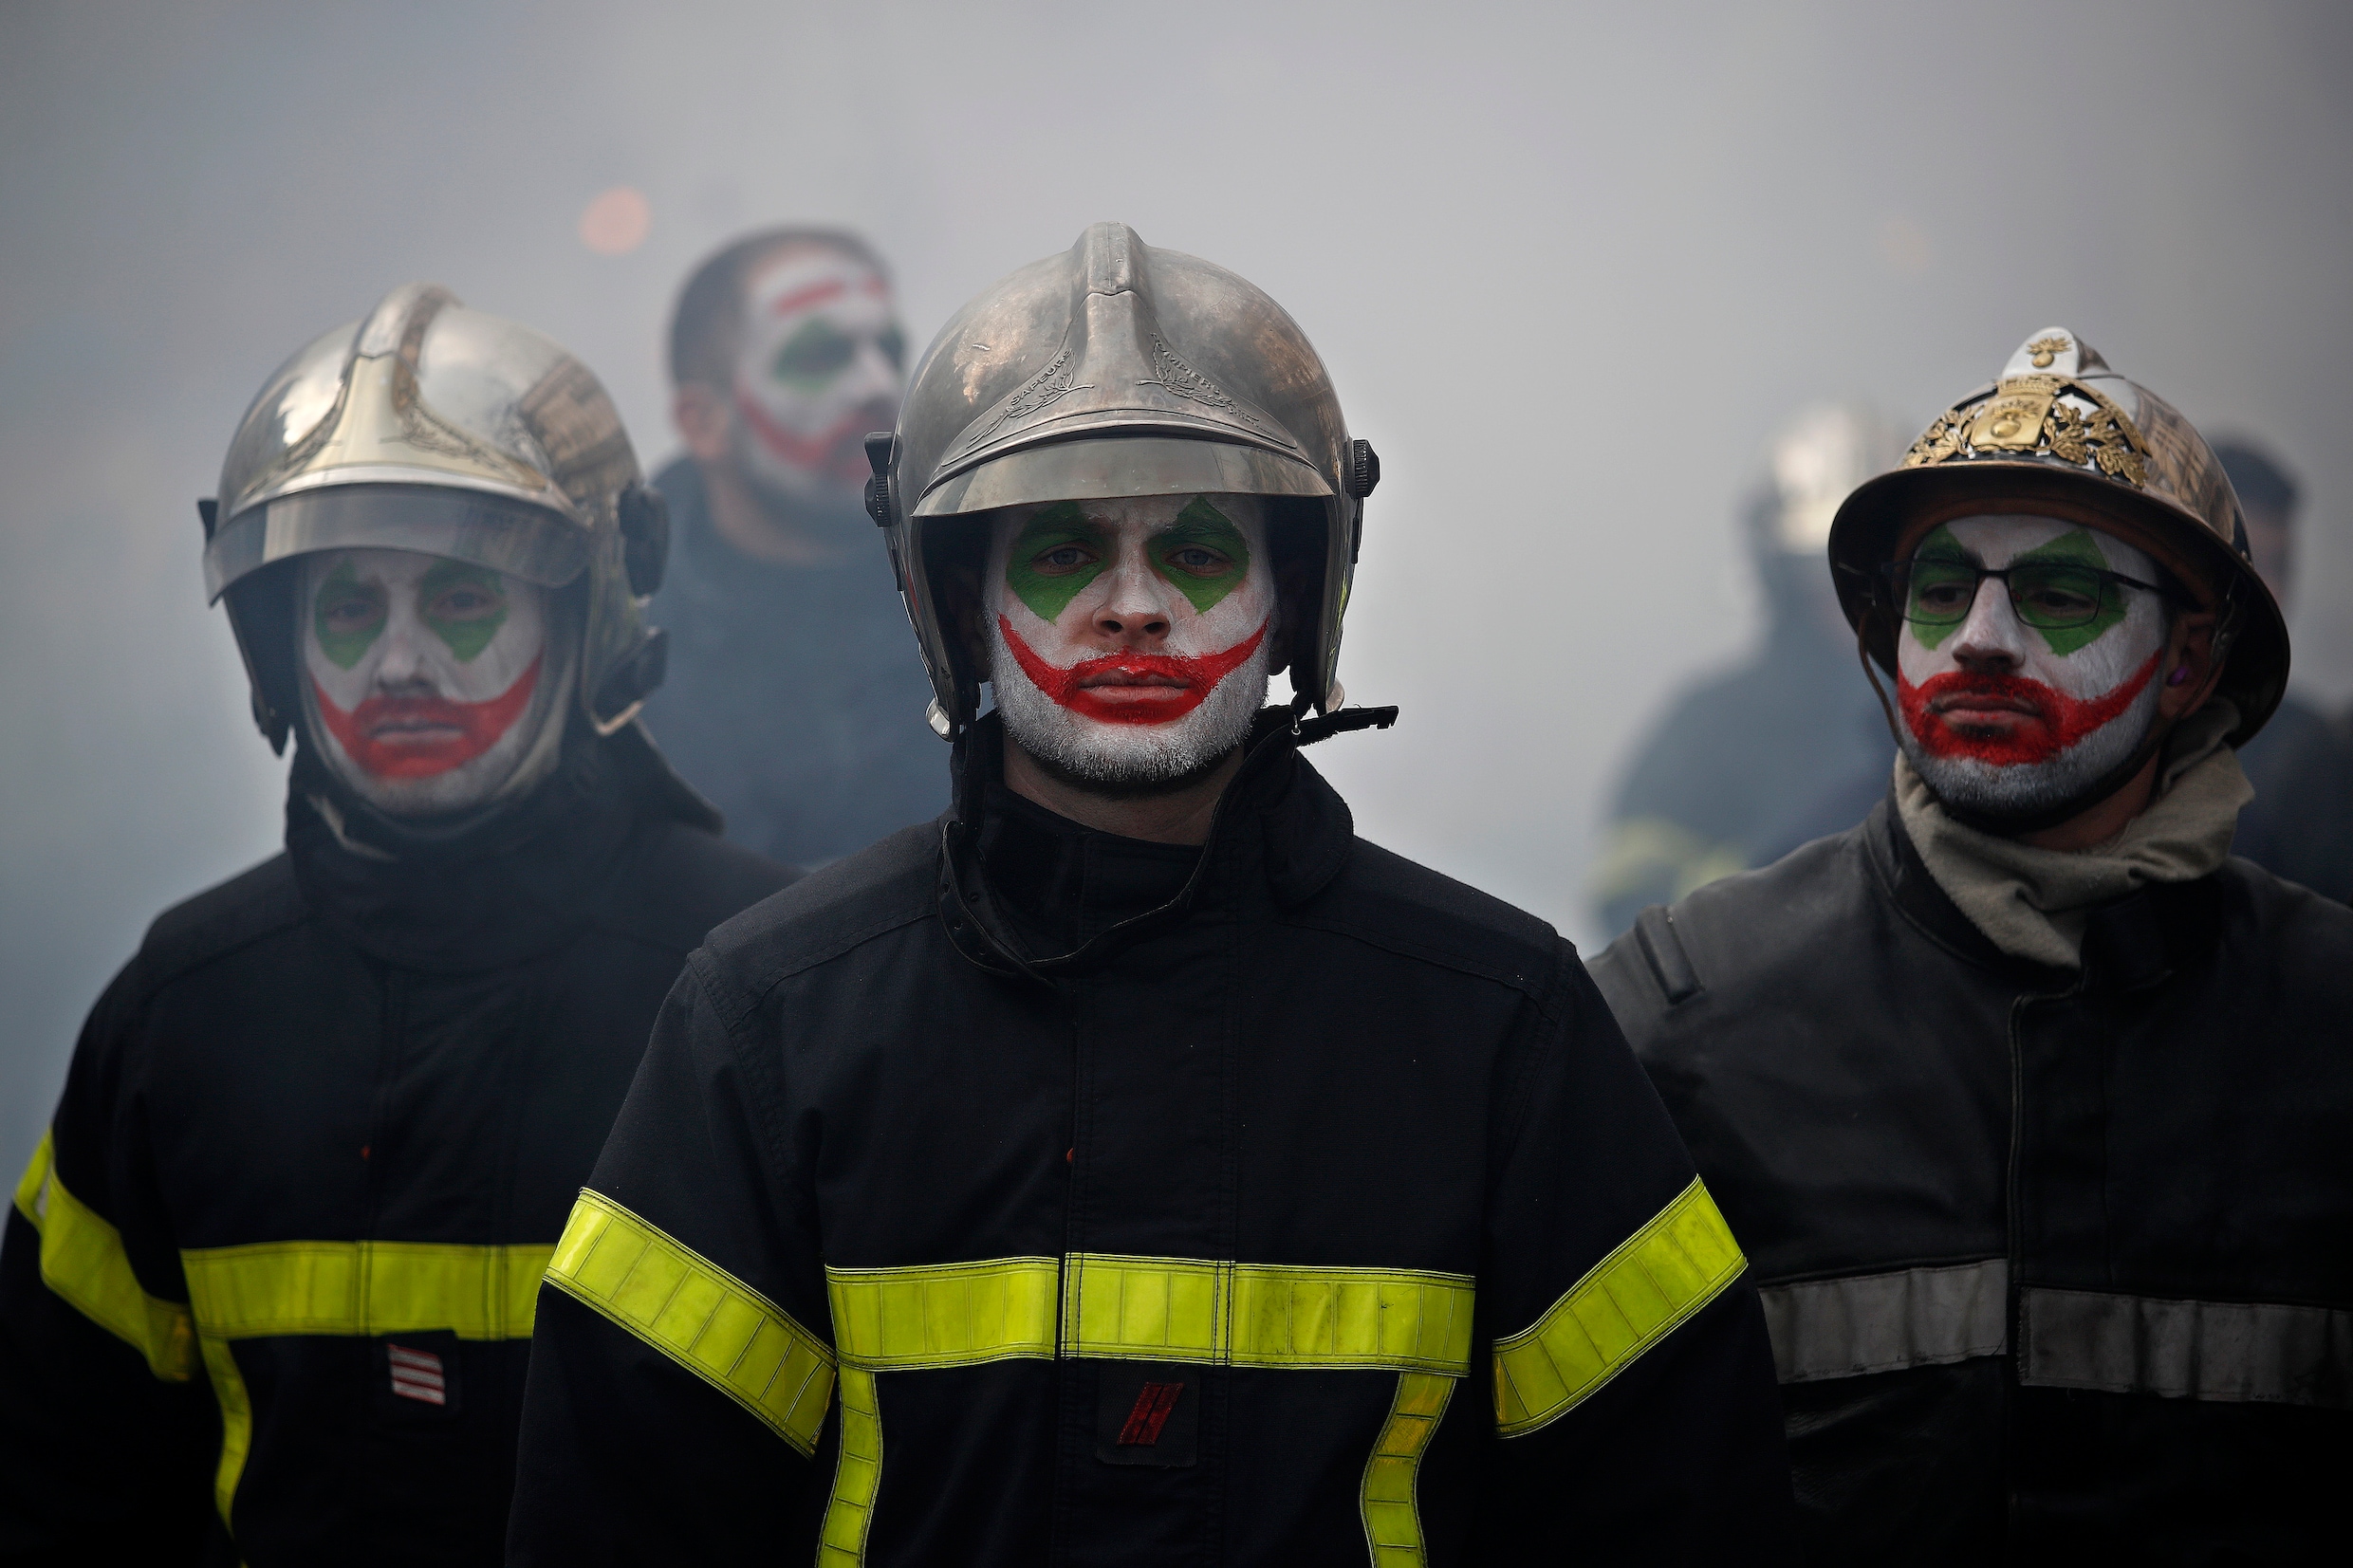 Franse politie raakt slaags met brandweerlui tijdens manifestatie in Parijs